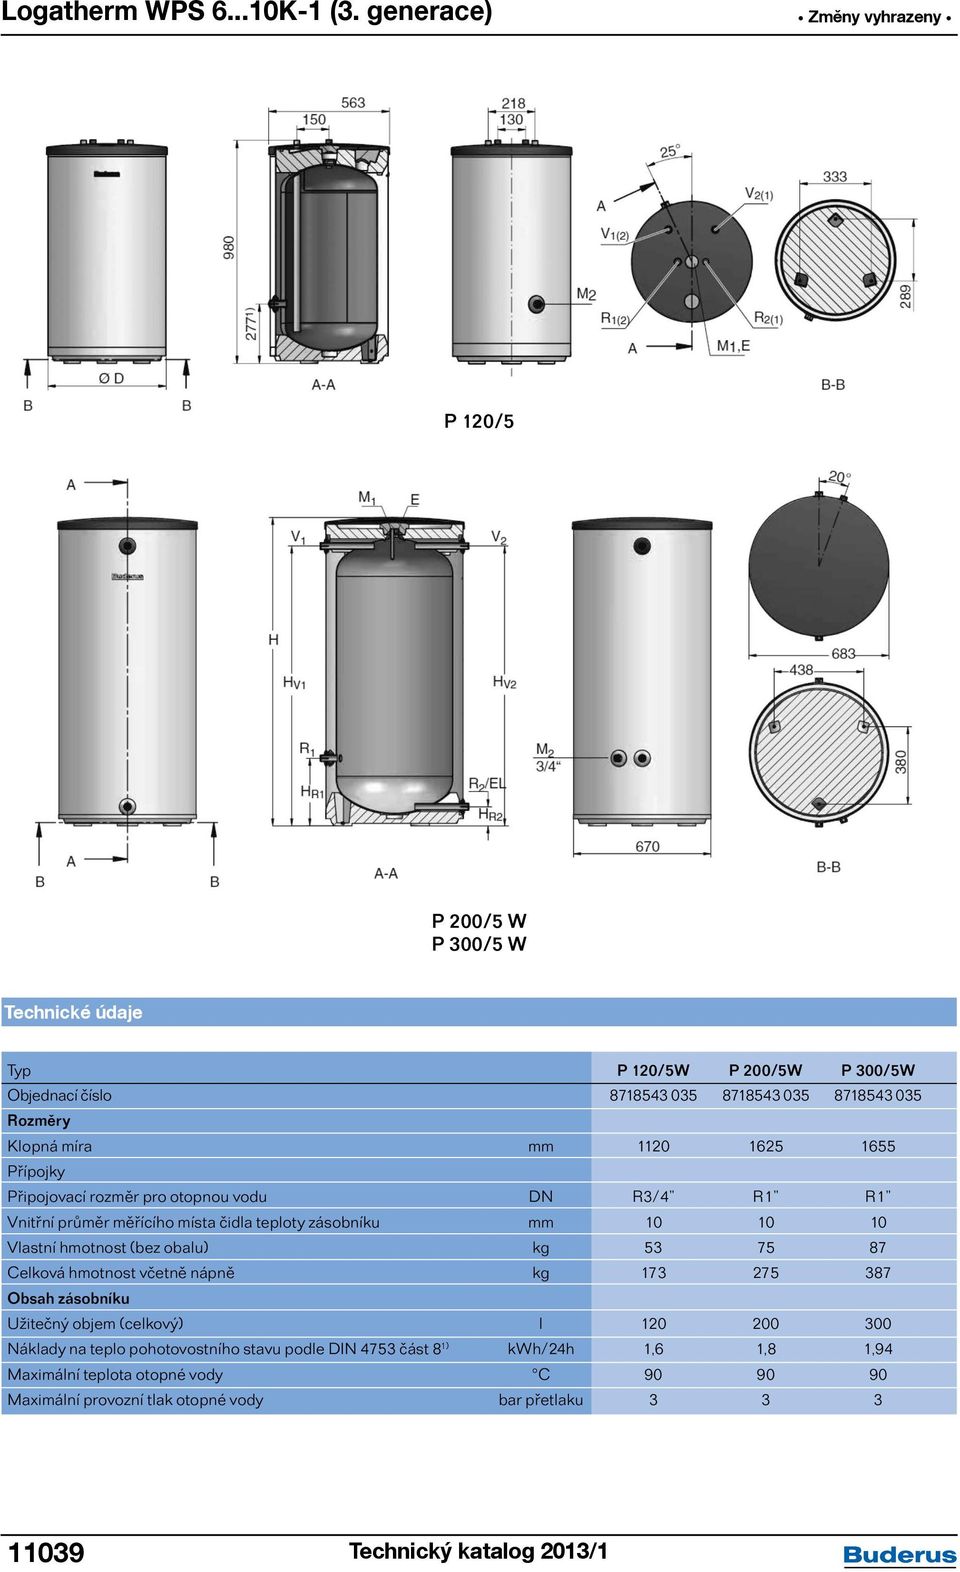 Připojovací rozměr pro otopnou vodu DN R3/4 R1 R1 Vnitřní průměr měřícího místa čidla teploty zásobníku mm 10 10 10 Vlastní hmotnost (bez obalu) kg 53 75 87